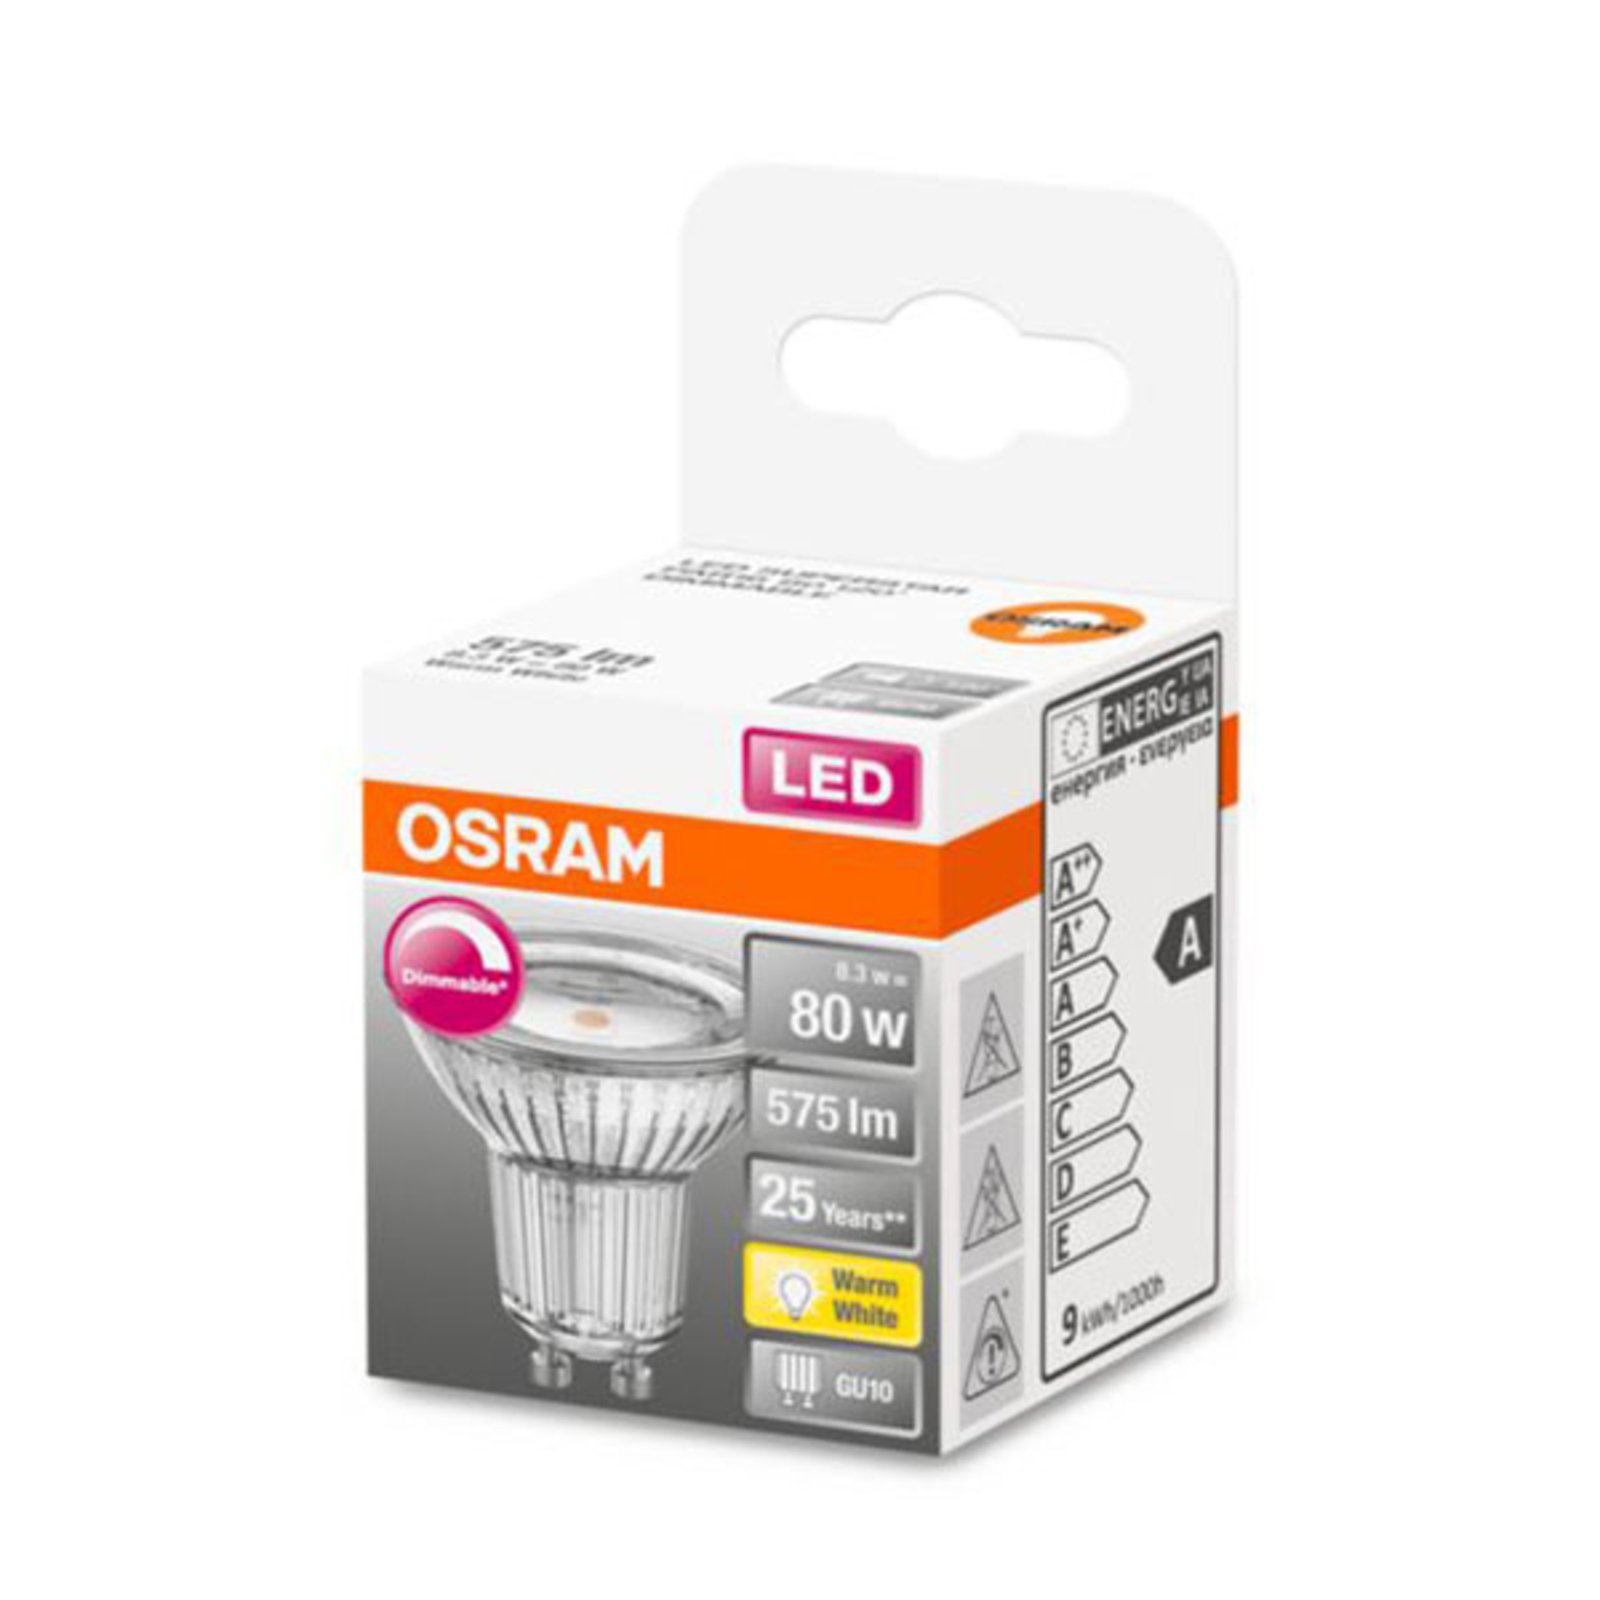 Kijkgat schermutseling Iedereen OSRAM LED glas-reflector GU10 7,9W 927 120° dim | Lampen24.be